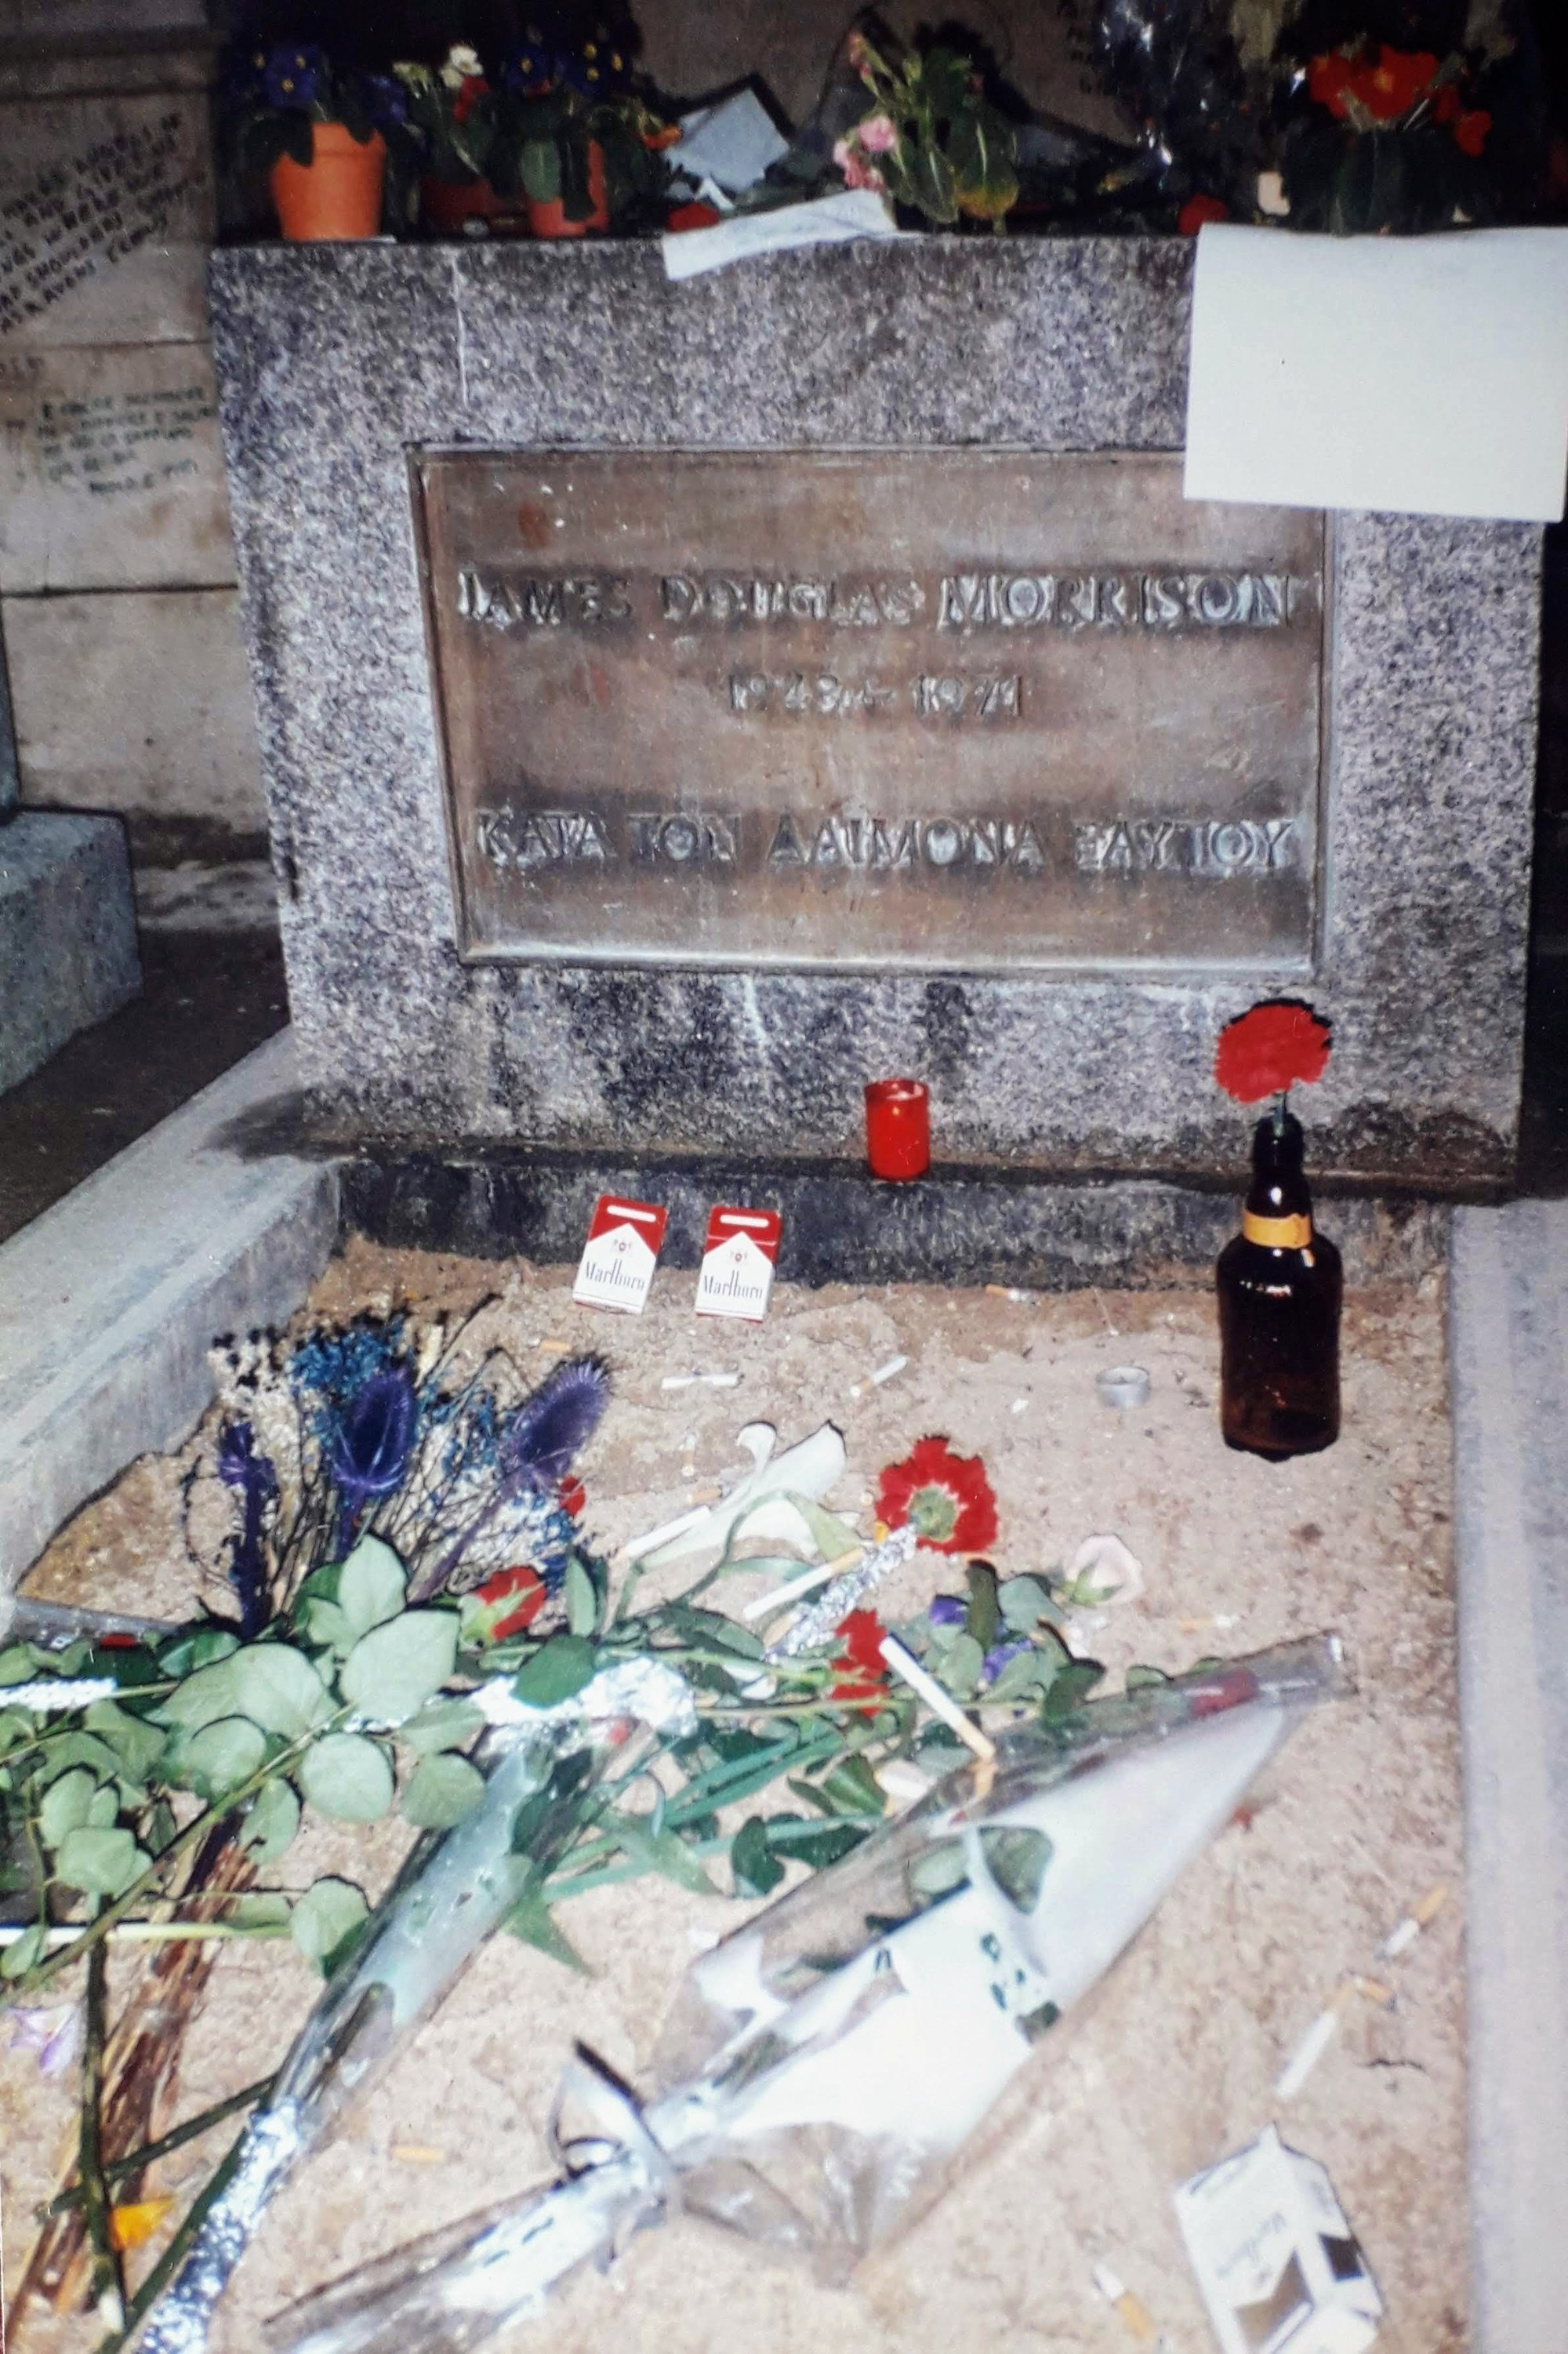 Jim Morrison's grave, Pere Lachaise Cemetery, Paris